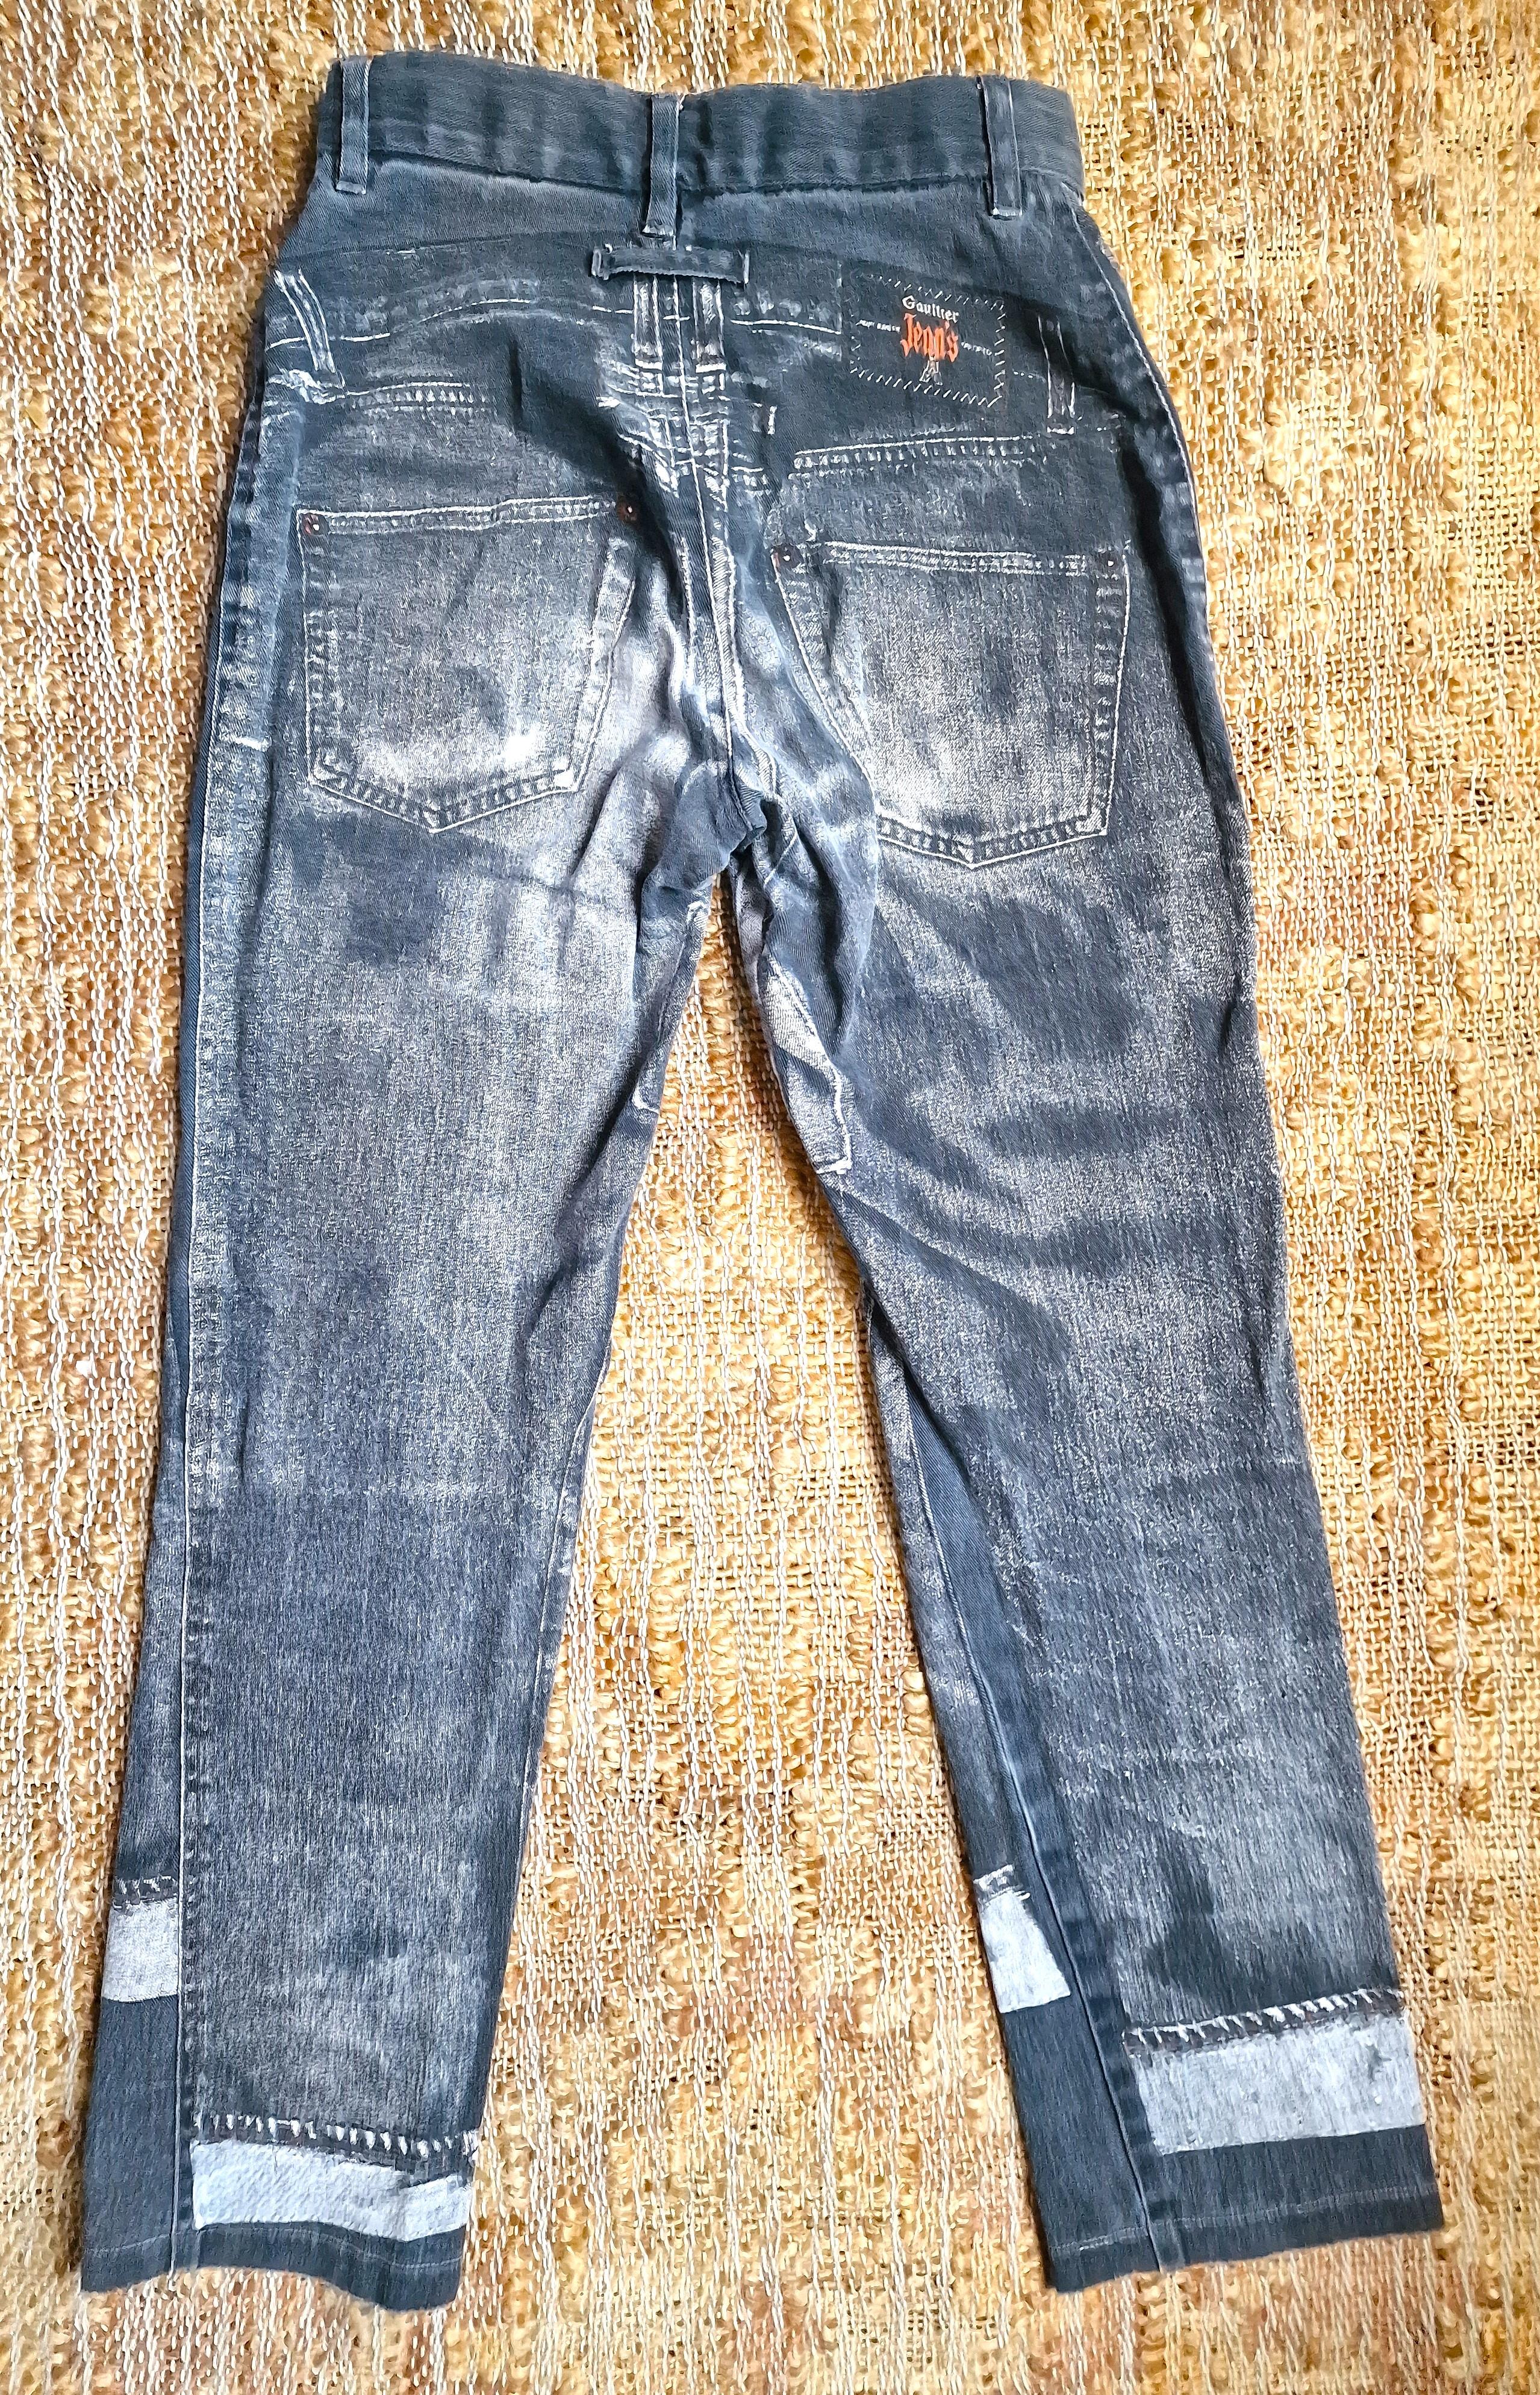 Jean Paul Gaultier Trompe L'Oeil Denim Optical Illusion Small XS Jeans Pants For Sale 5